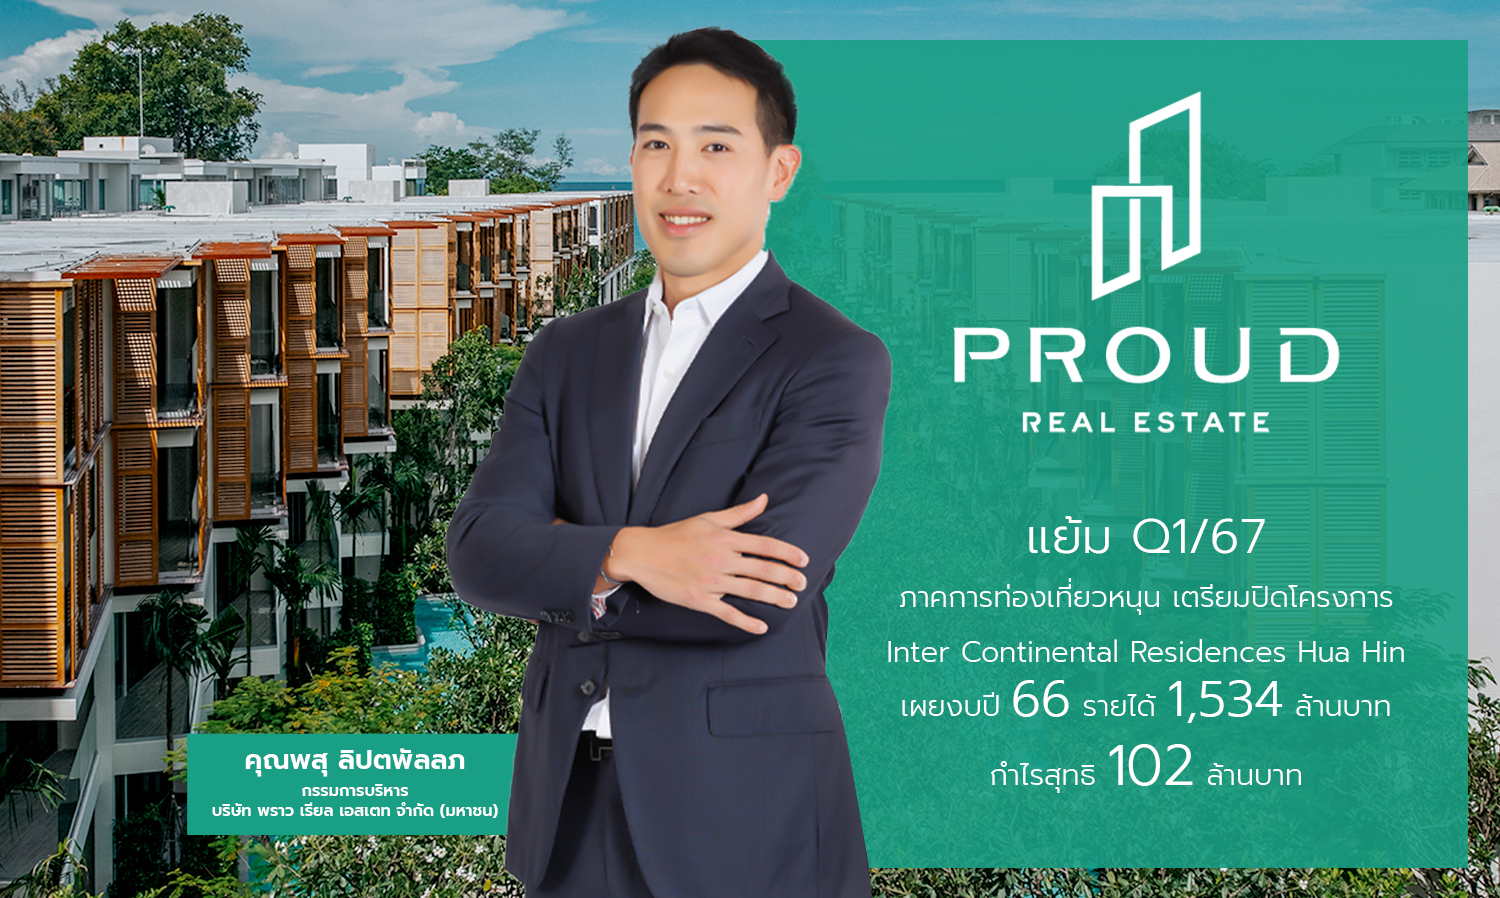 PROUD เตรียมปิดโครงการ InterContinental Residences Hua Hin ปี 66 รายได้ 1,534 ล้านบาท กำไรสุทธิ 102 ล้านบาท